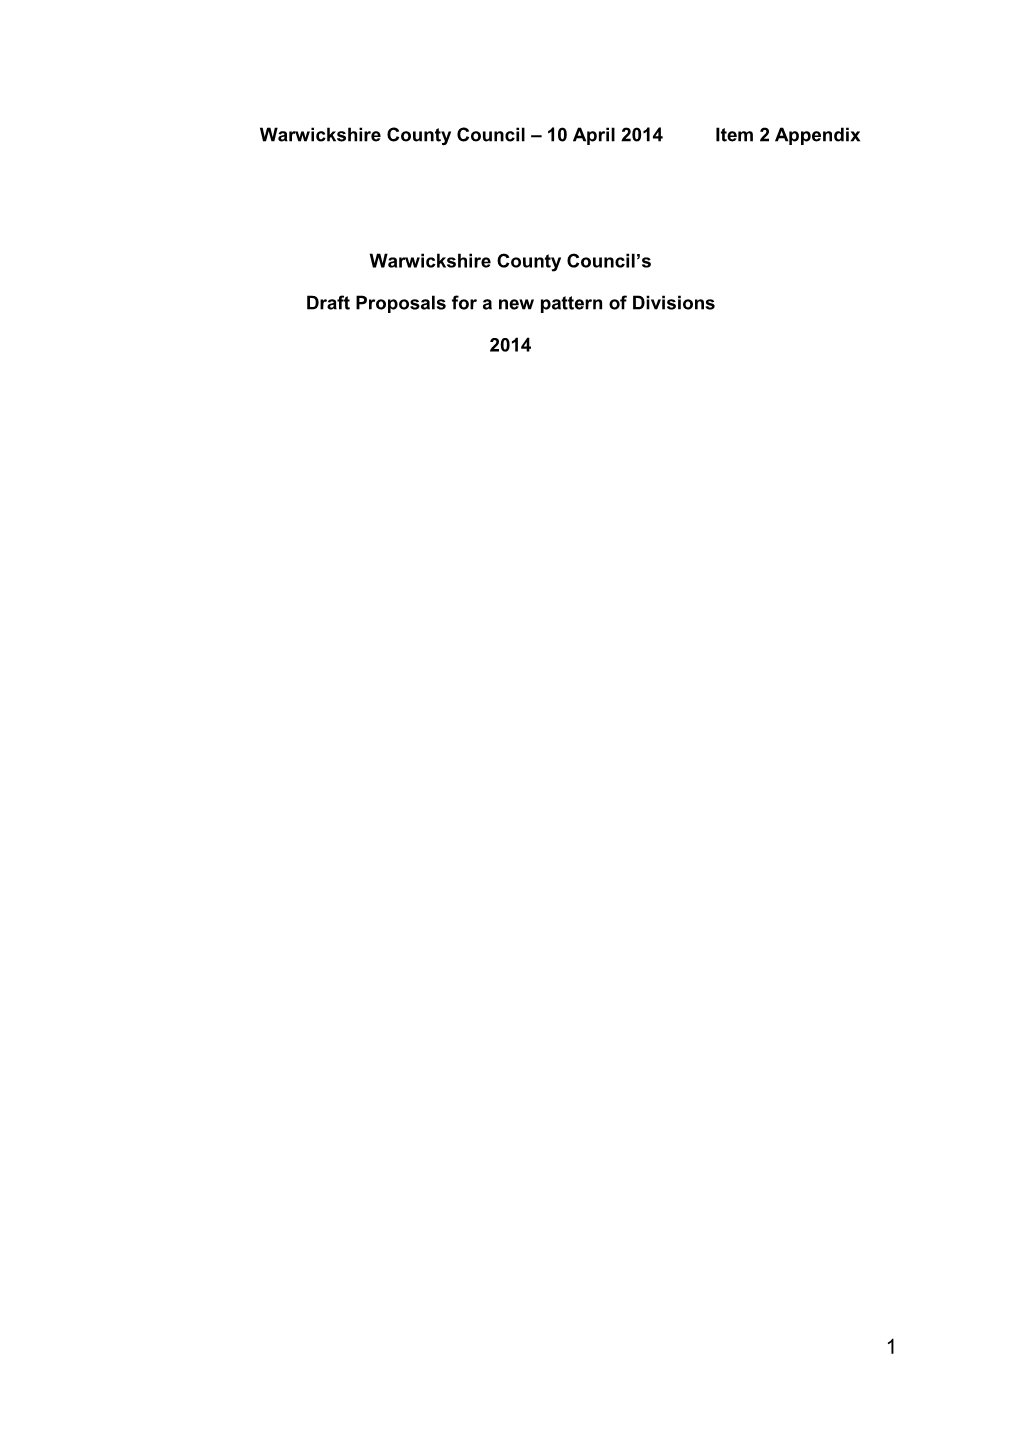 10 April 2014 Item 2 Appendix Warwickshire County Council's Draft Proposals for a New Patt